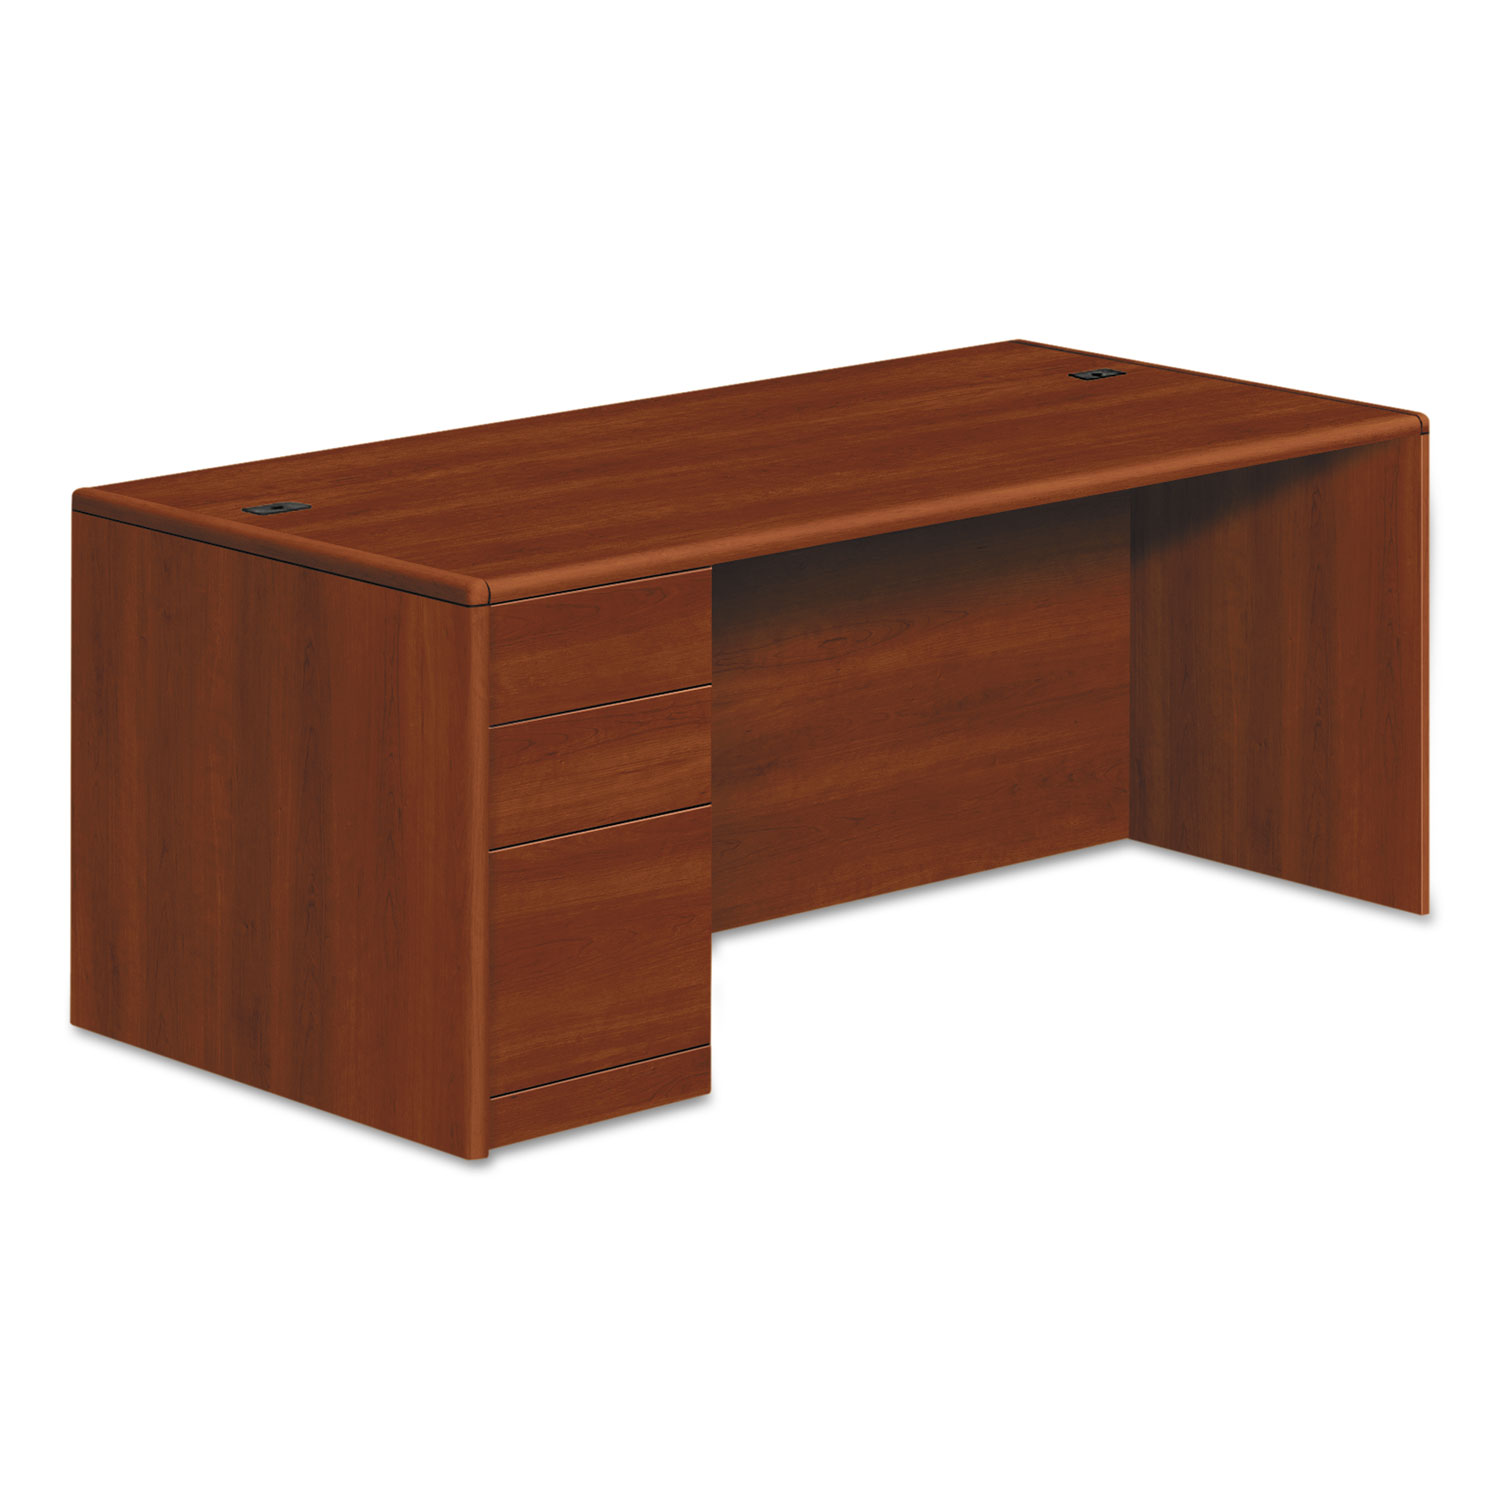  HON H10788L.COGNCOGN 10700 Series Single Pedestal Desk, Full Left Pedestal, 72w x 36d x 29.5h, Cognac (HON10788LCO) 